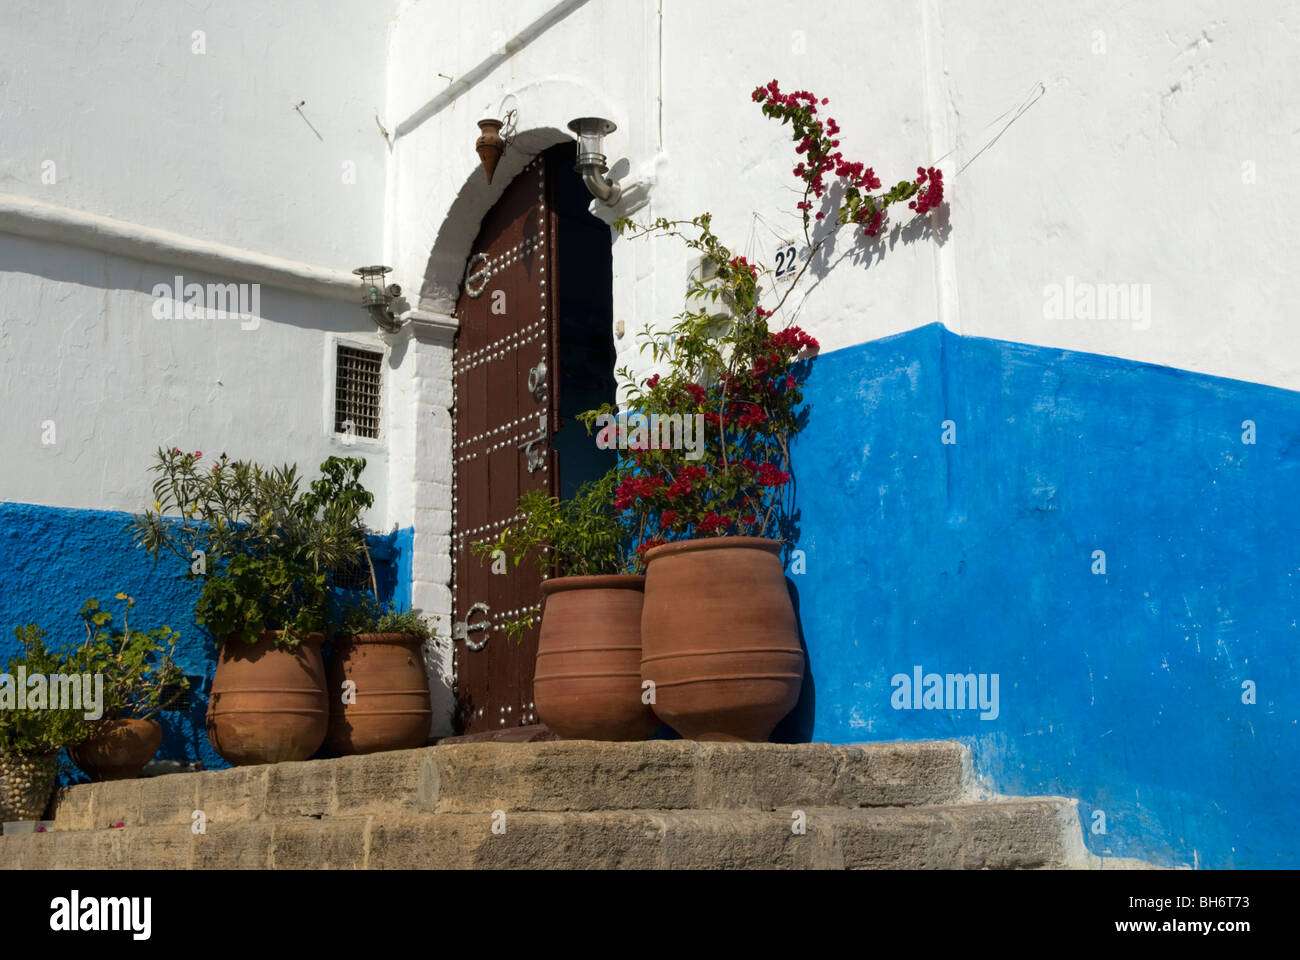 Pots en terre cuite dans la Kasbah des Oudaias, Rabat, Maroc. Banque D'Images